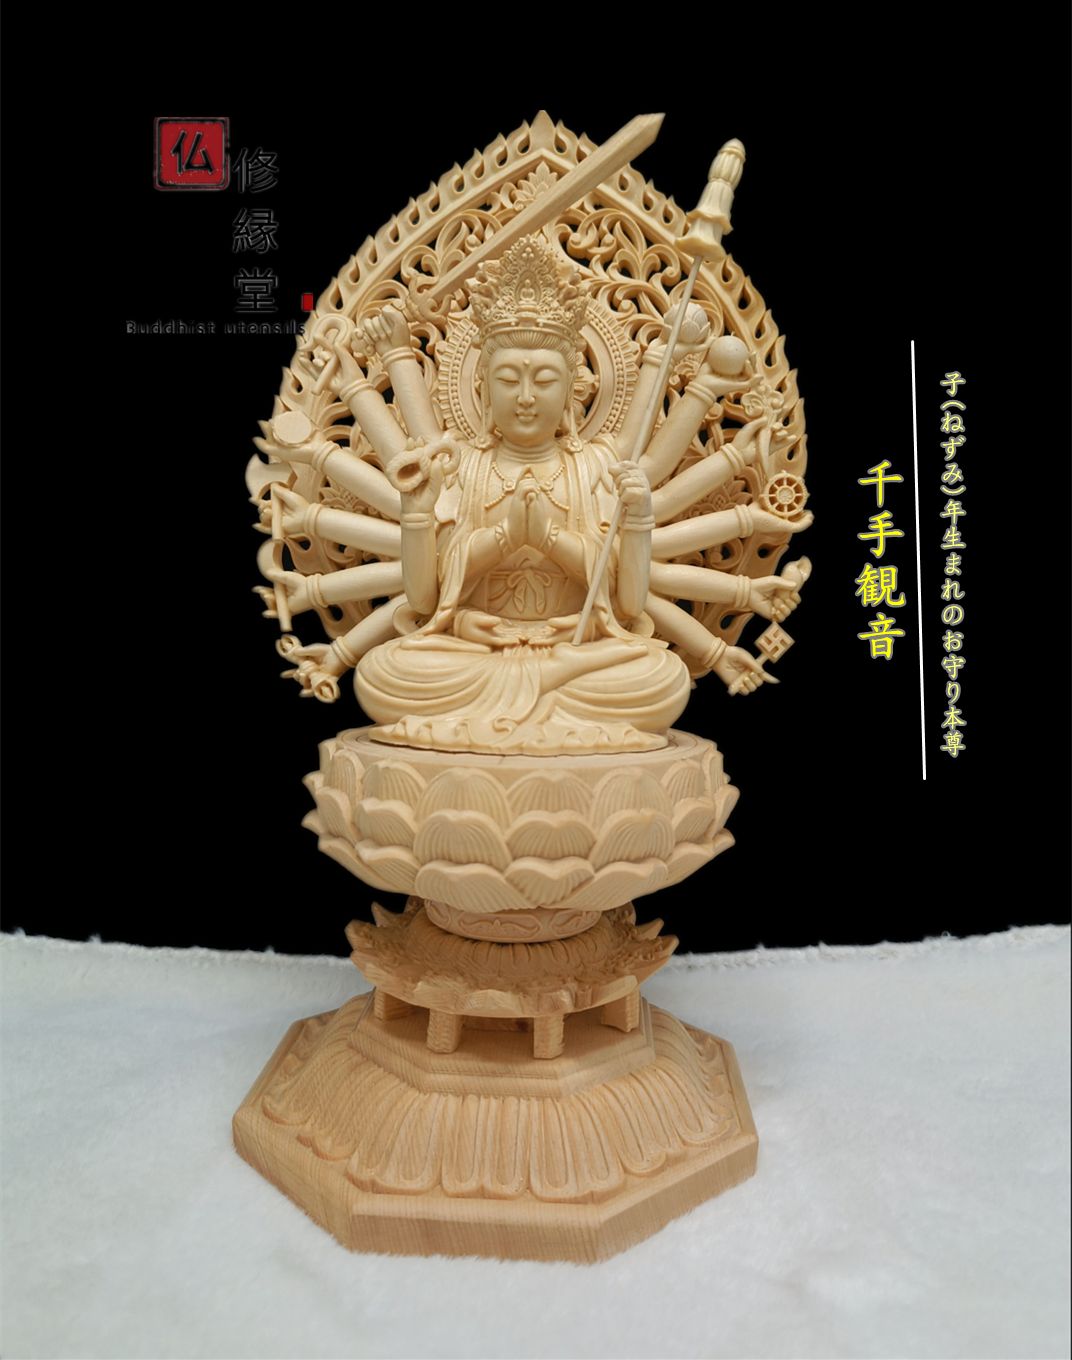 【修縁堂】最高級 木彫仏像 地蔵菩薩座像 彫刻 本金 切金 一刀彫 天然木檜材木彫